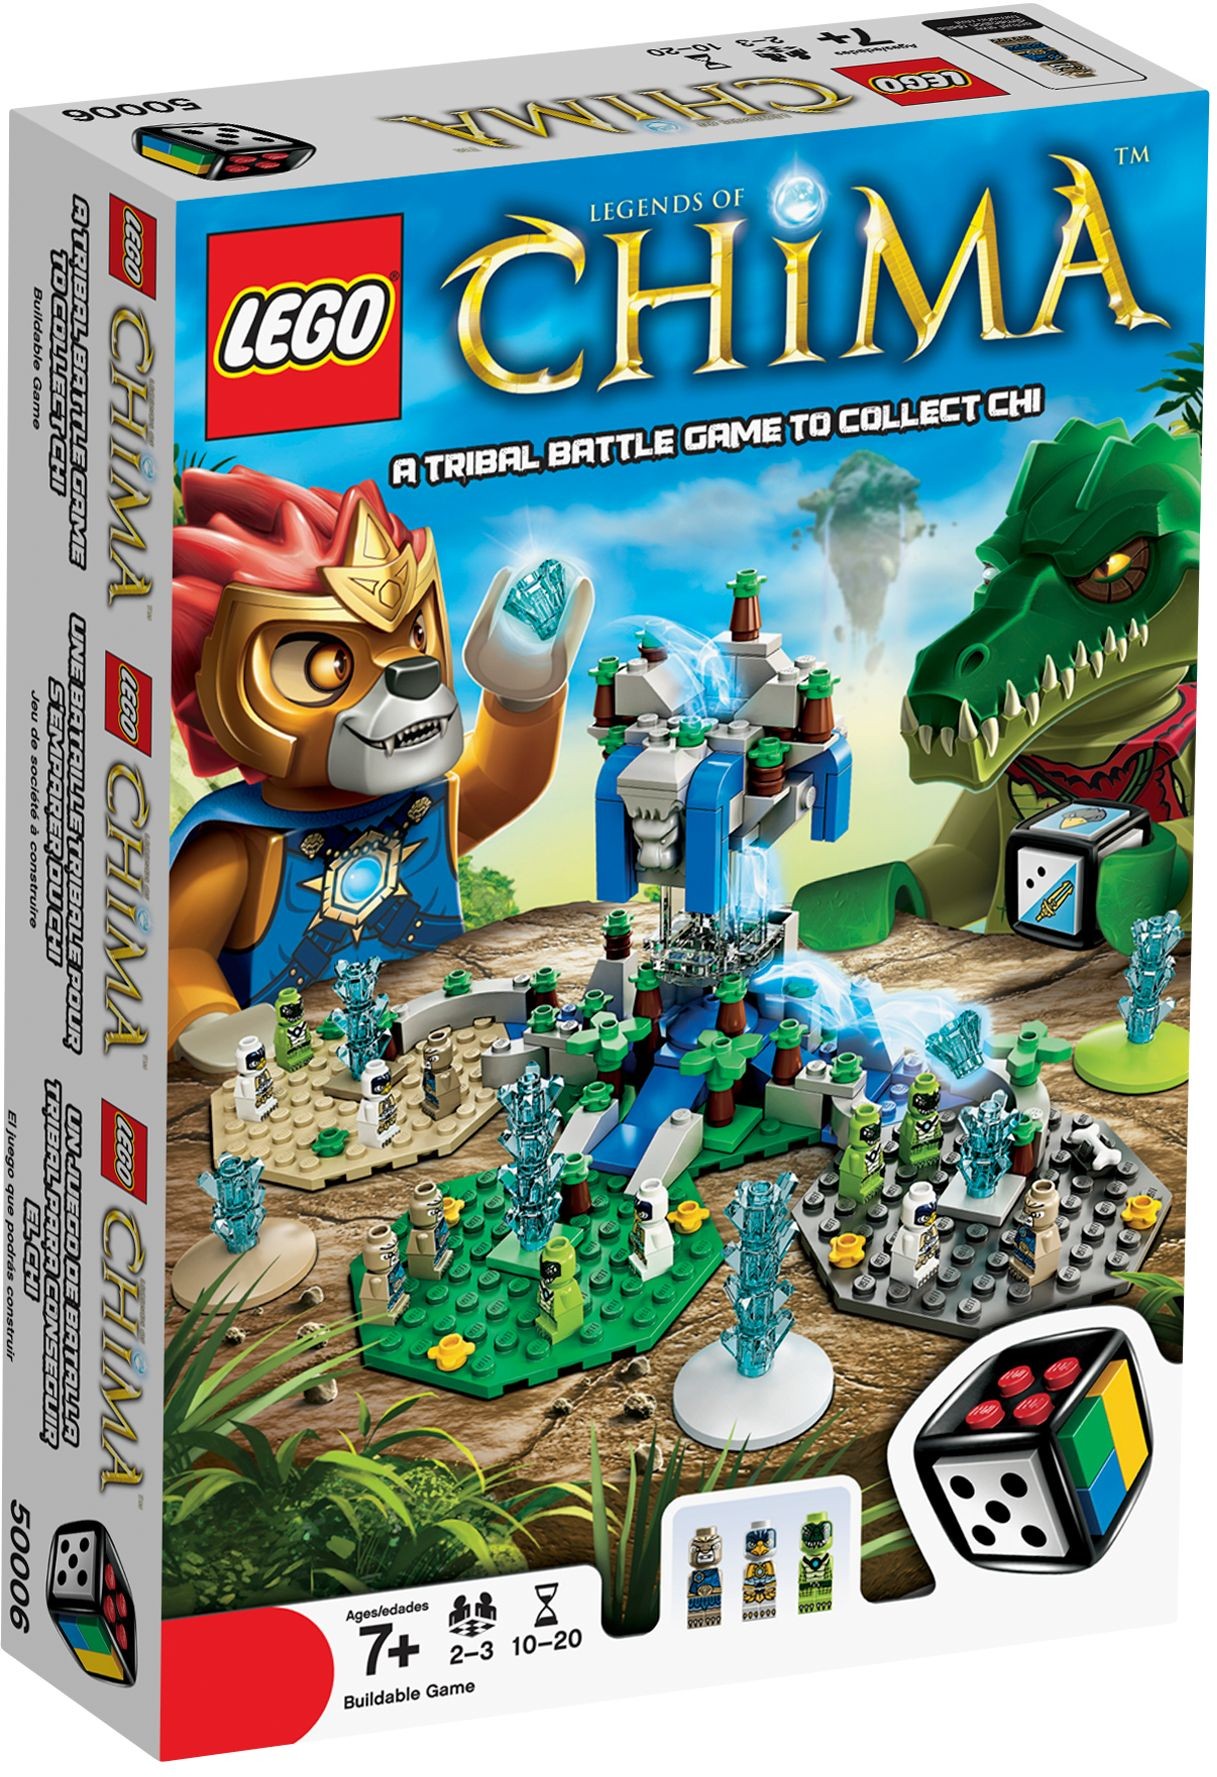 salvie ude af drift spiller 50006 Legends of Chima LEGO-sett, tilbud og anmeldelser